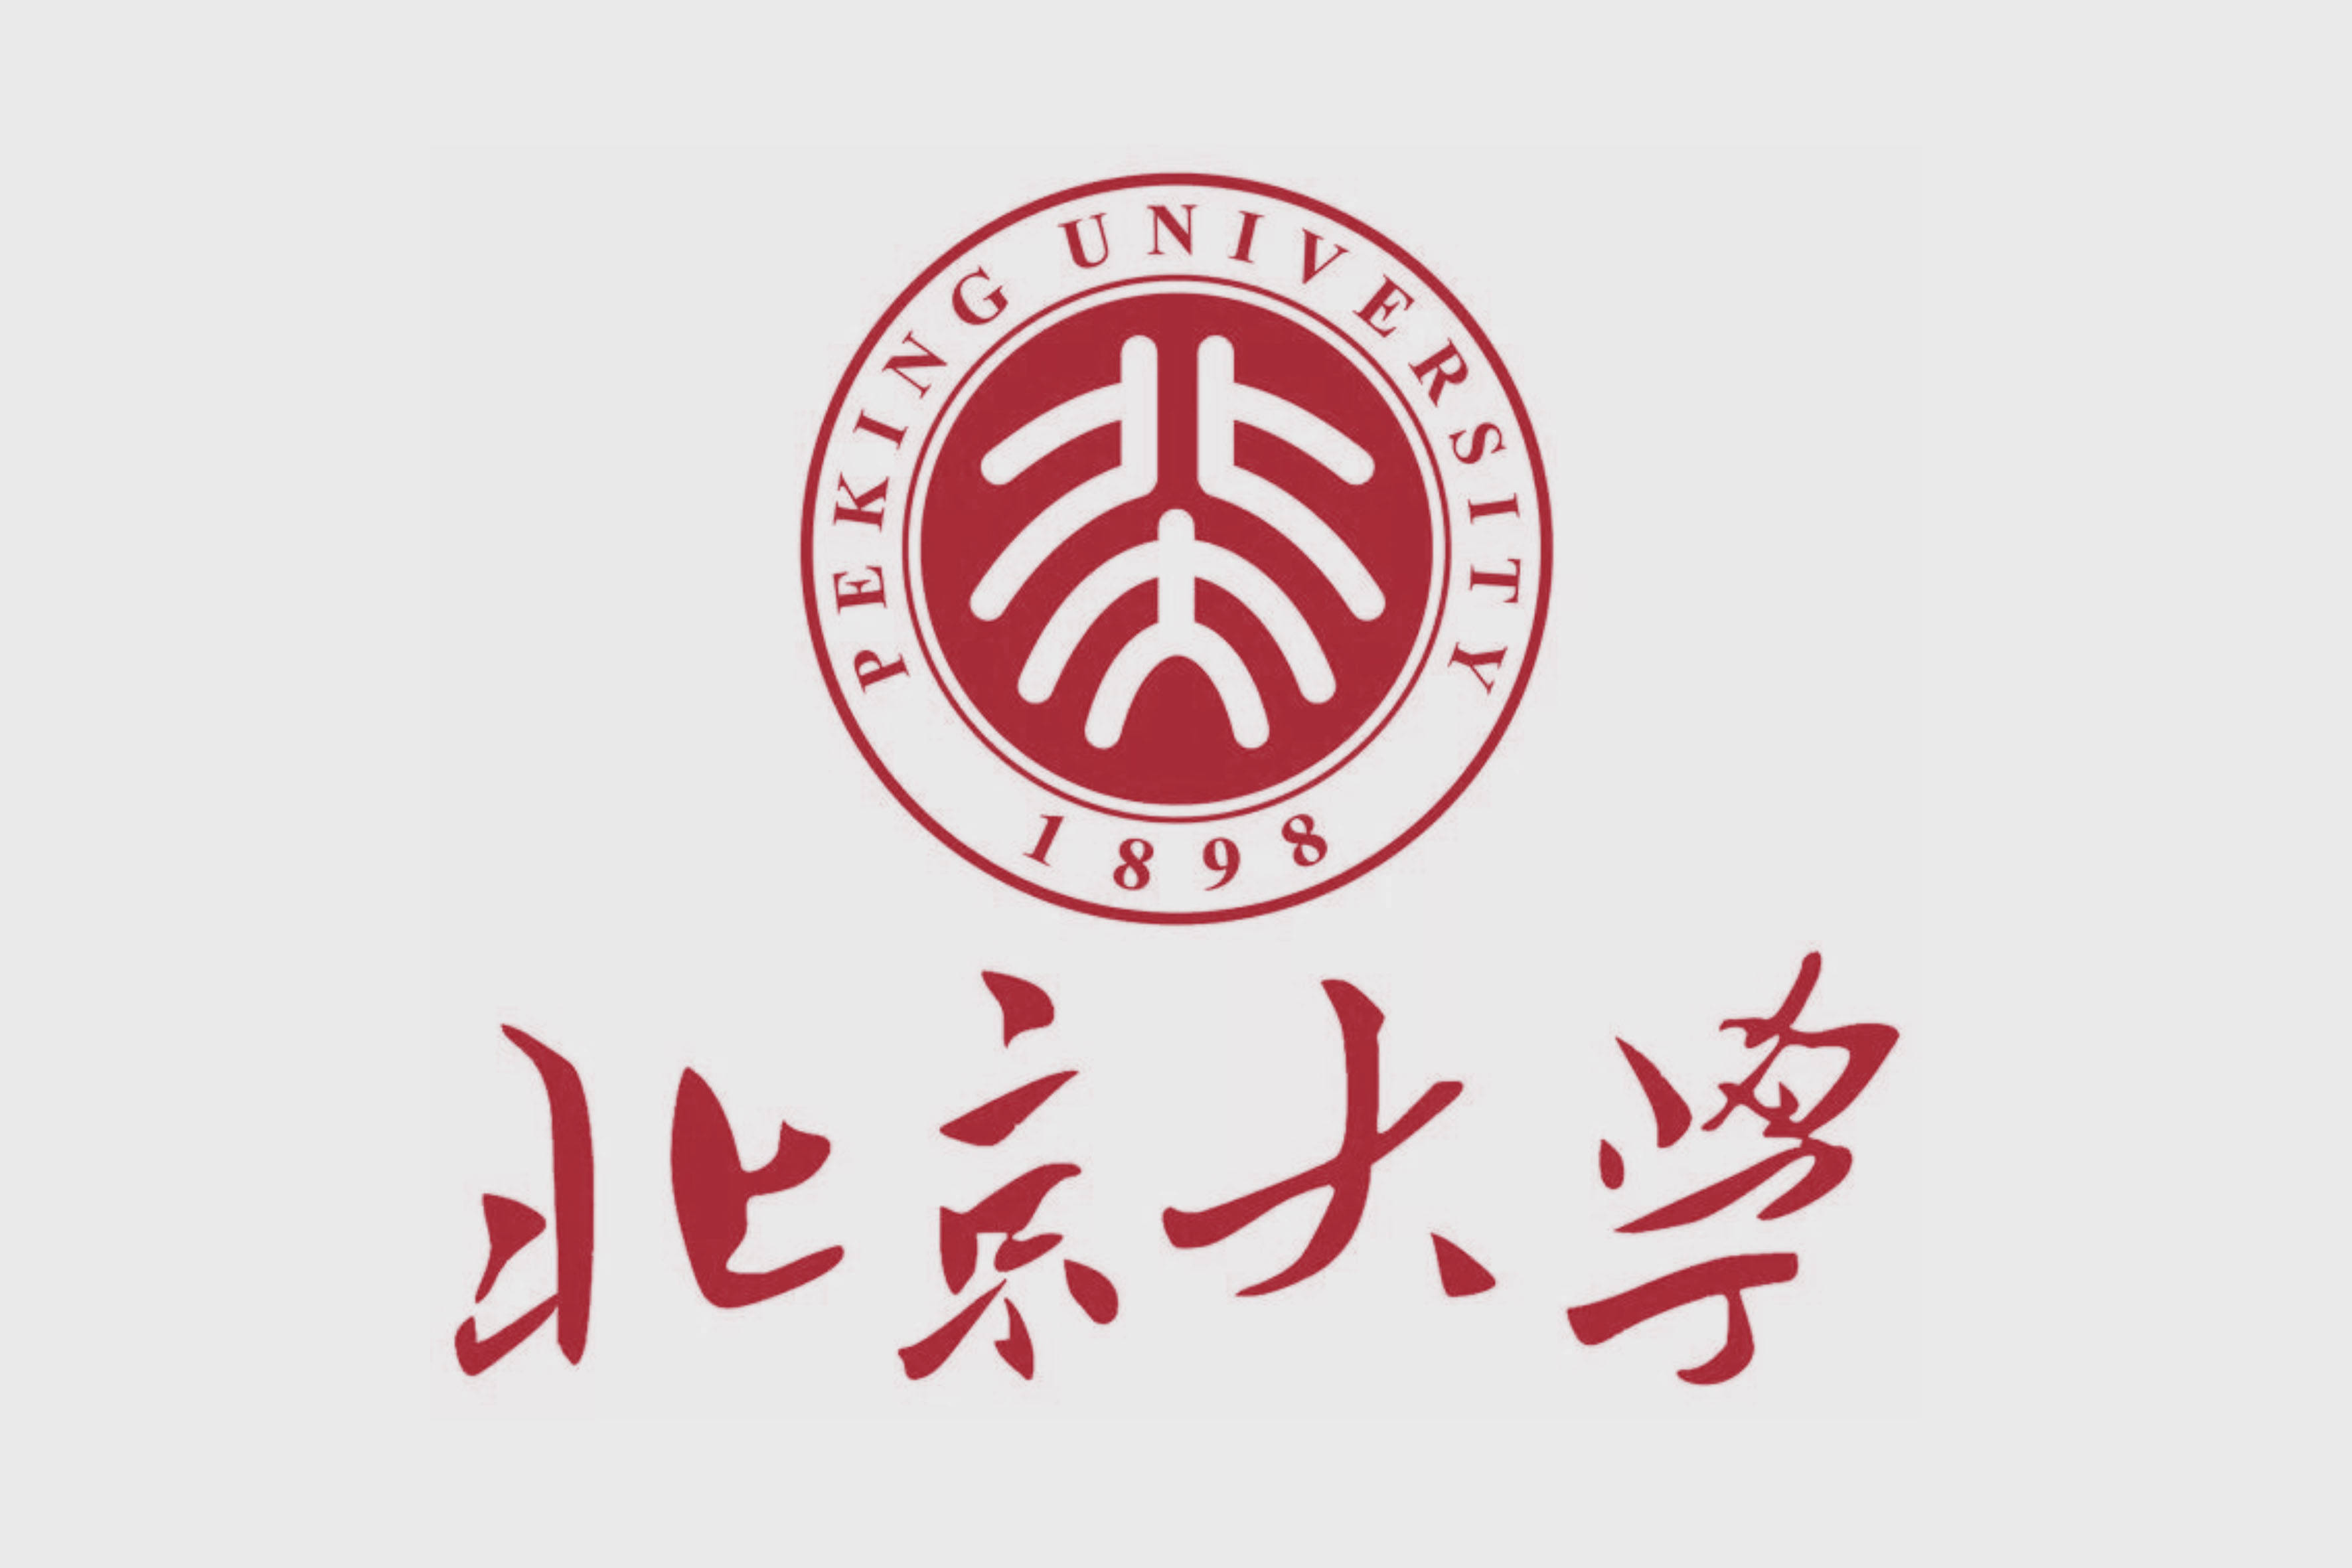 鲁迅设计的北大校徽logo鲁迅设计的十二章国徽鲁迅手写体厦门大学